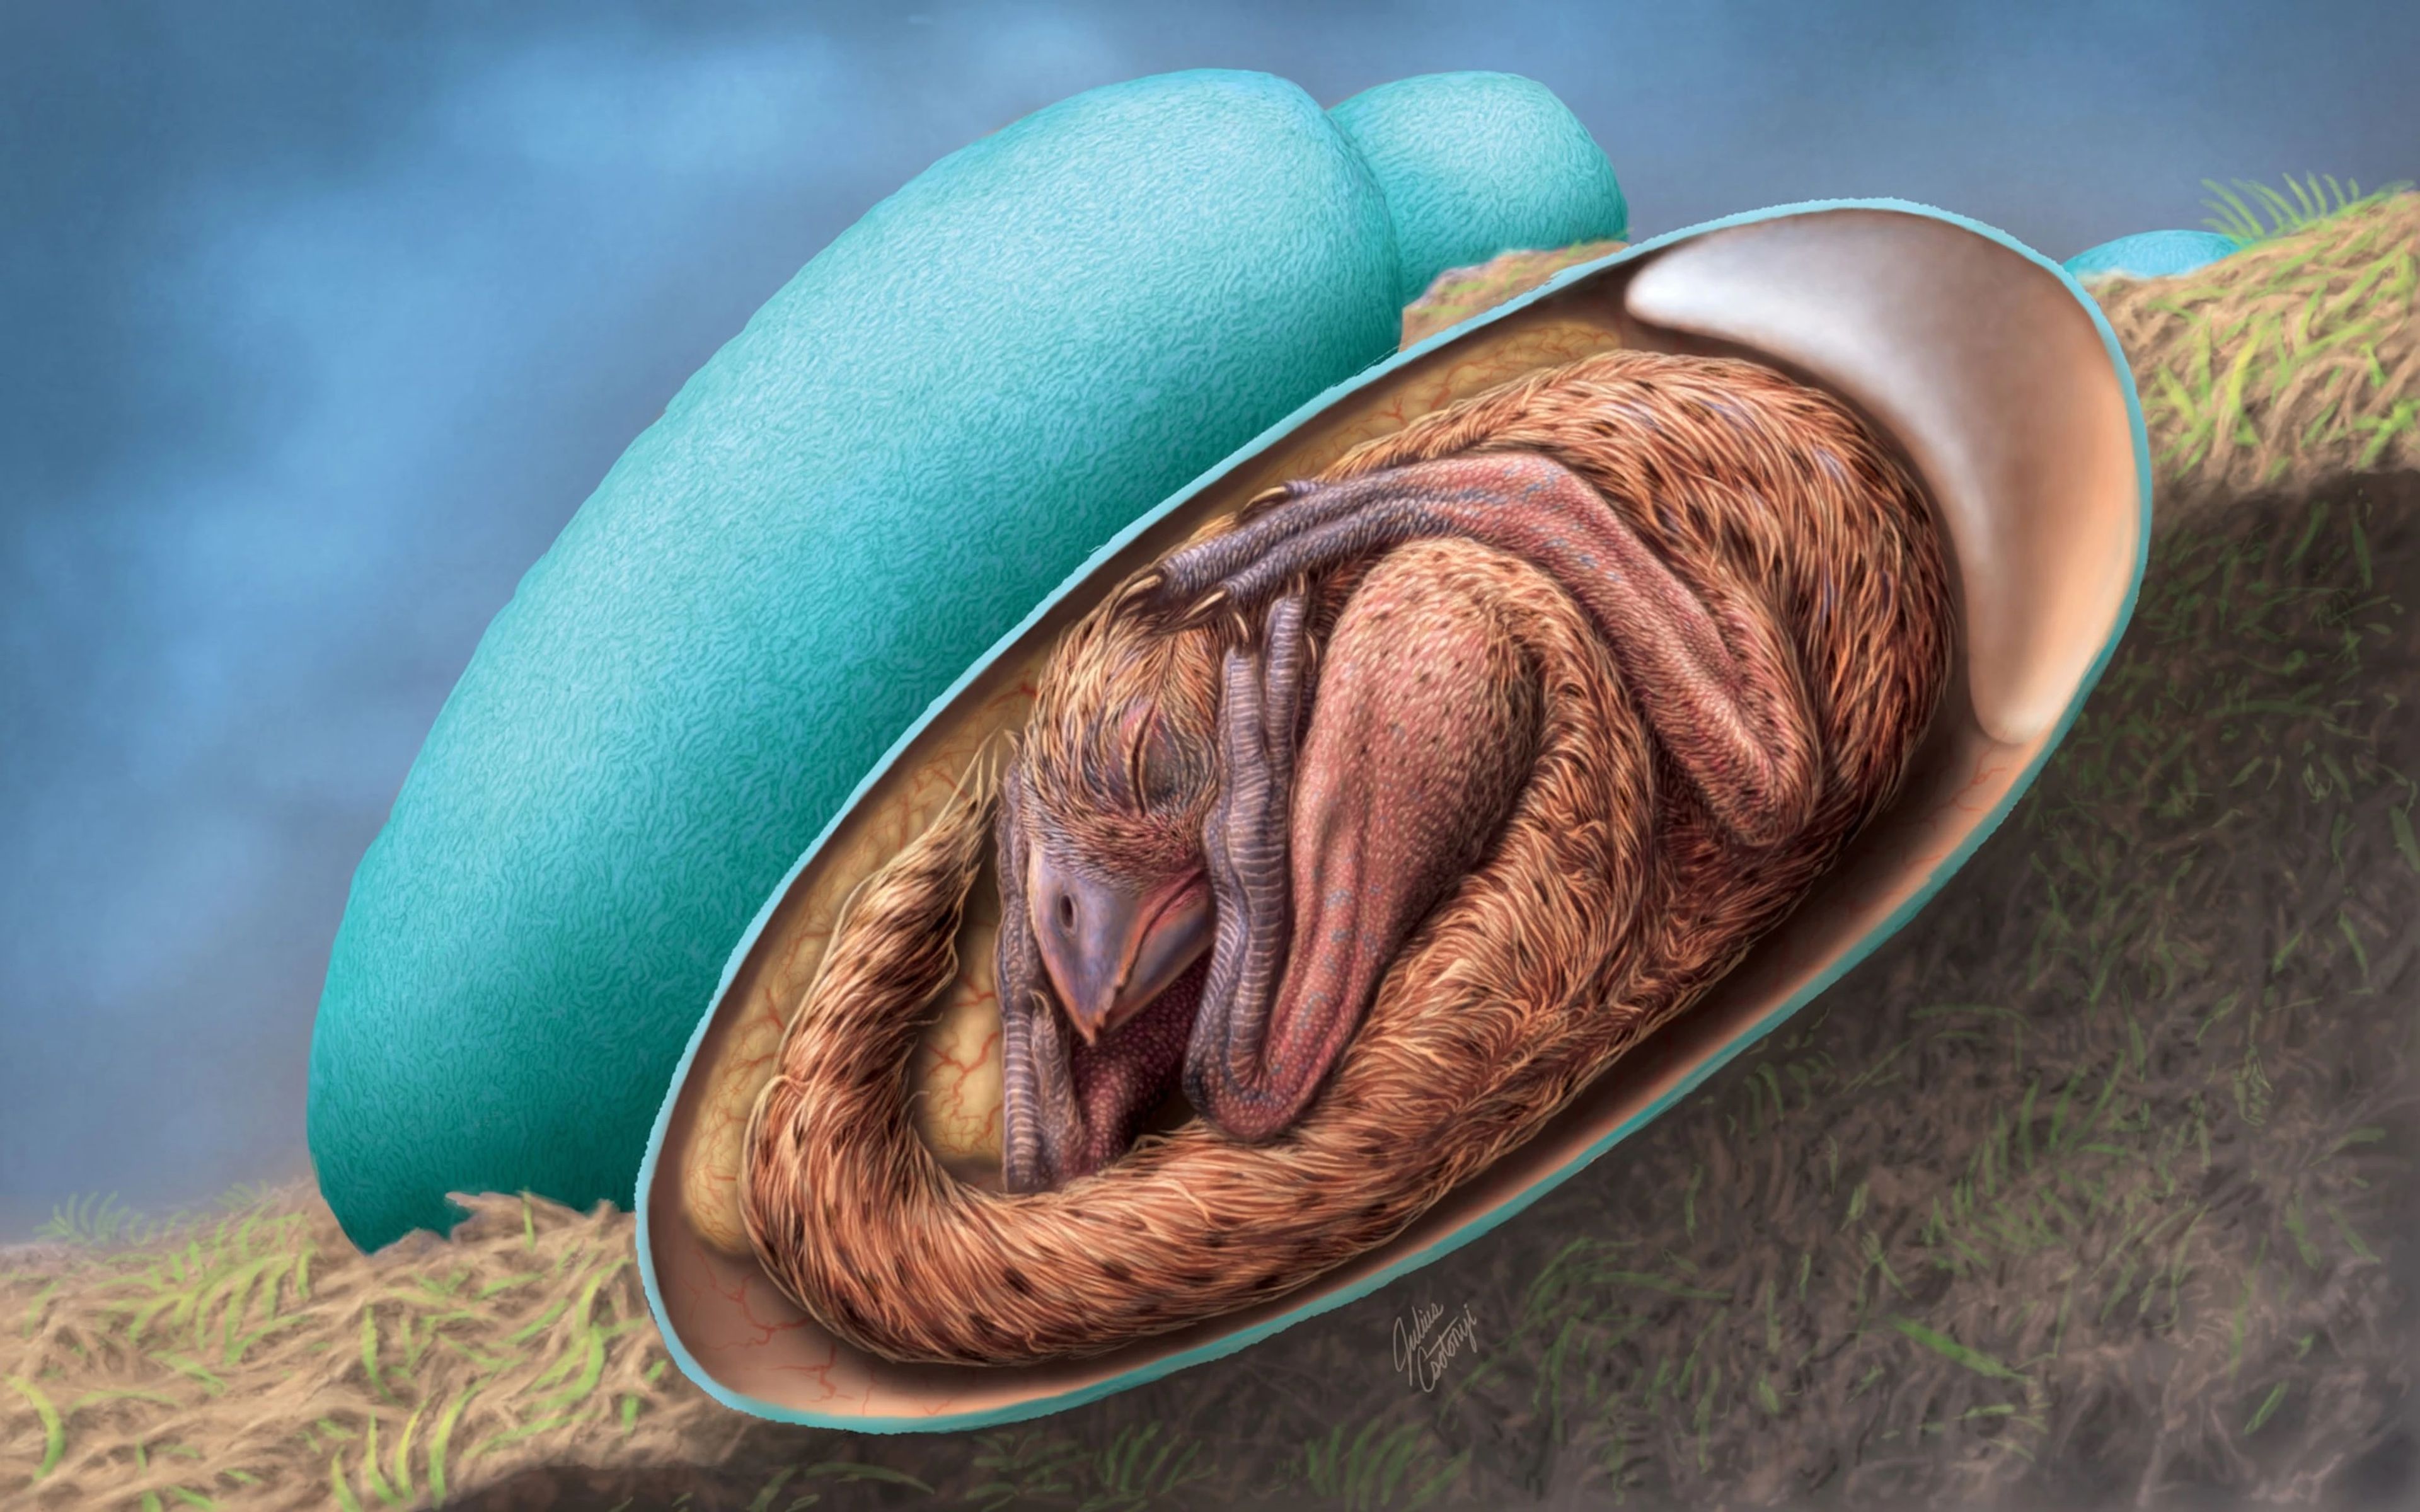 Representación artística del embrión de oviraptor dentro del huevo.